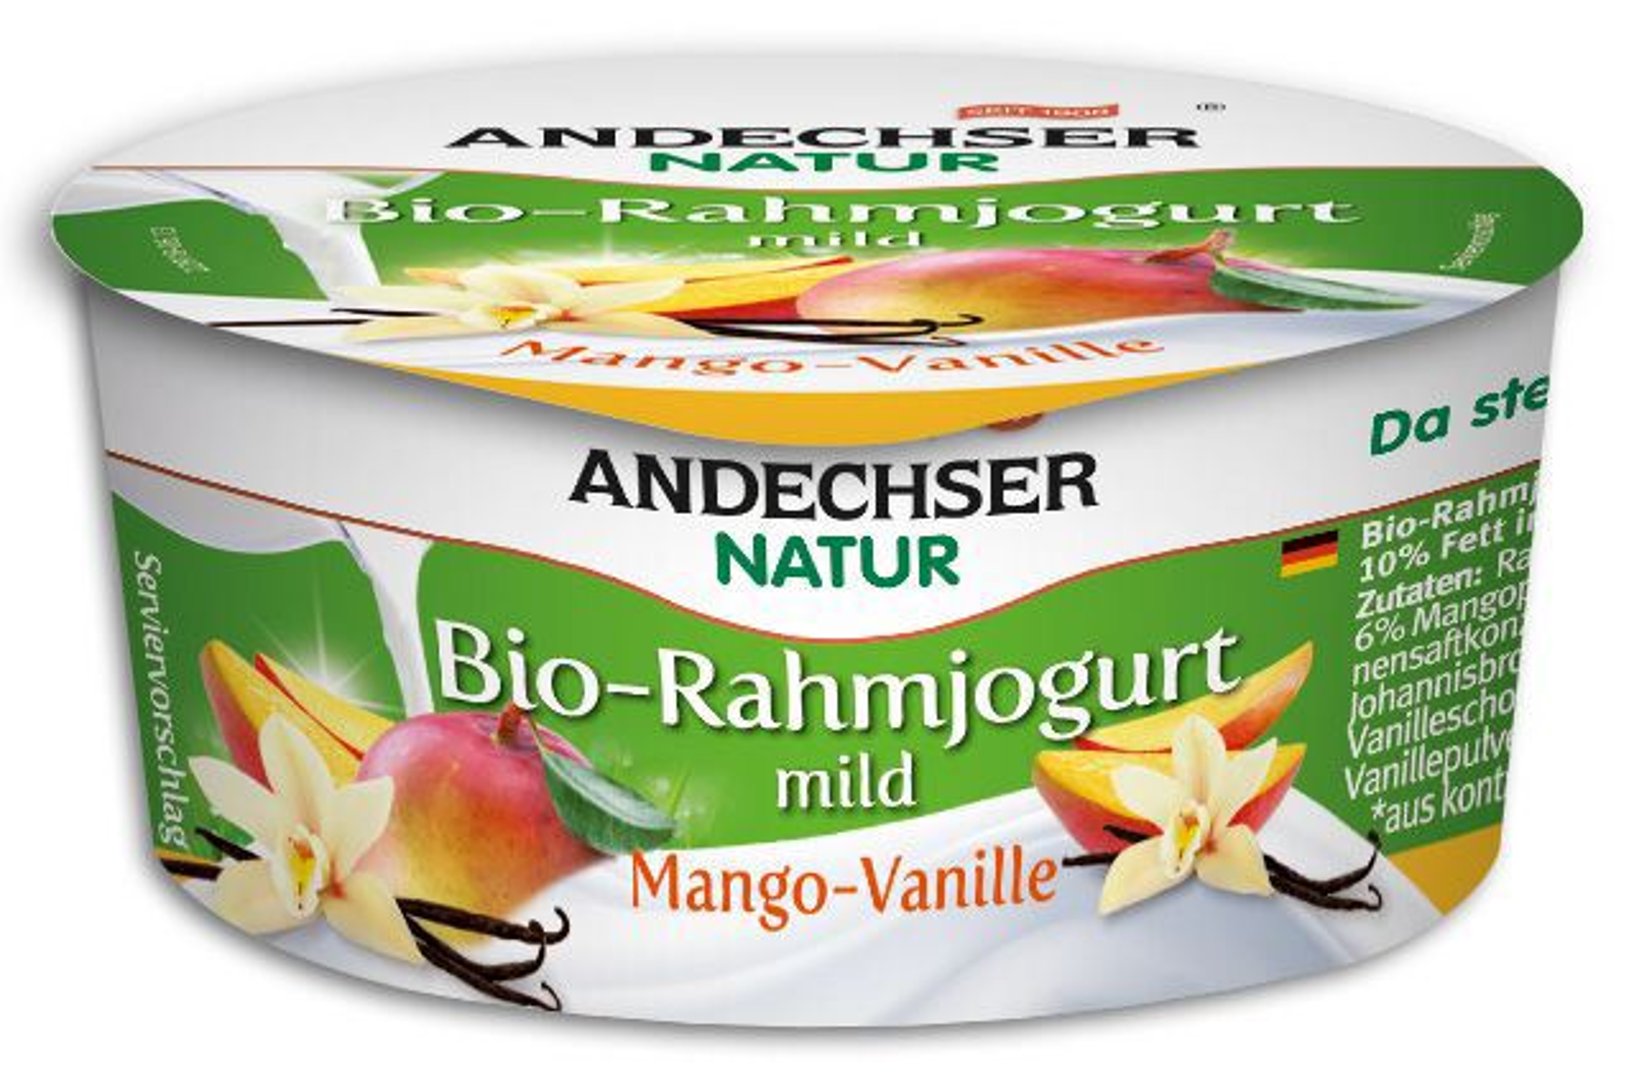 Andechser - BIO Rahmjoghurt Mango-Vanille 10 % Fett im Milchanteil - 150 g Becher